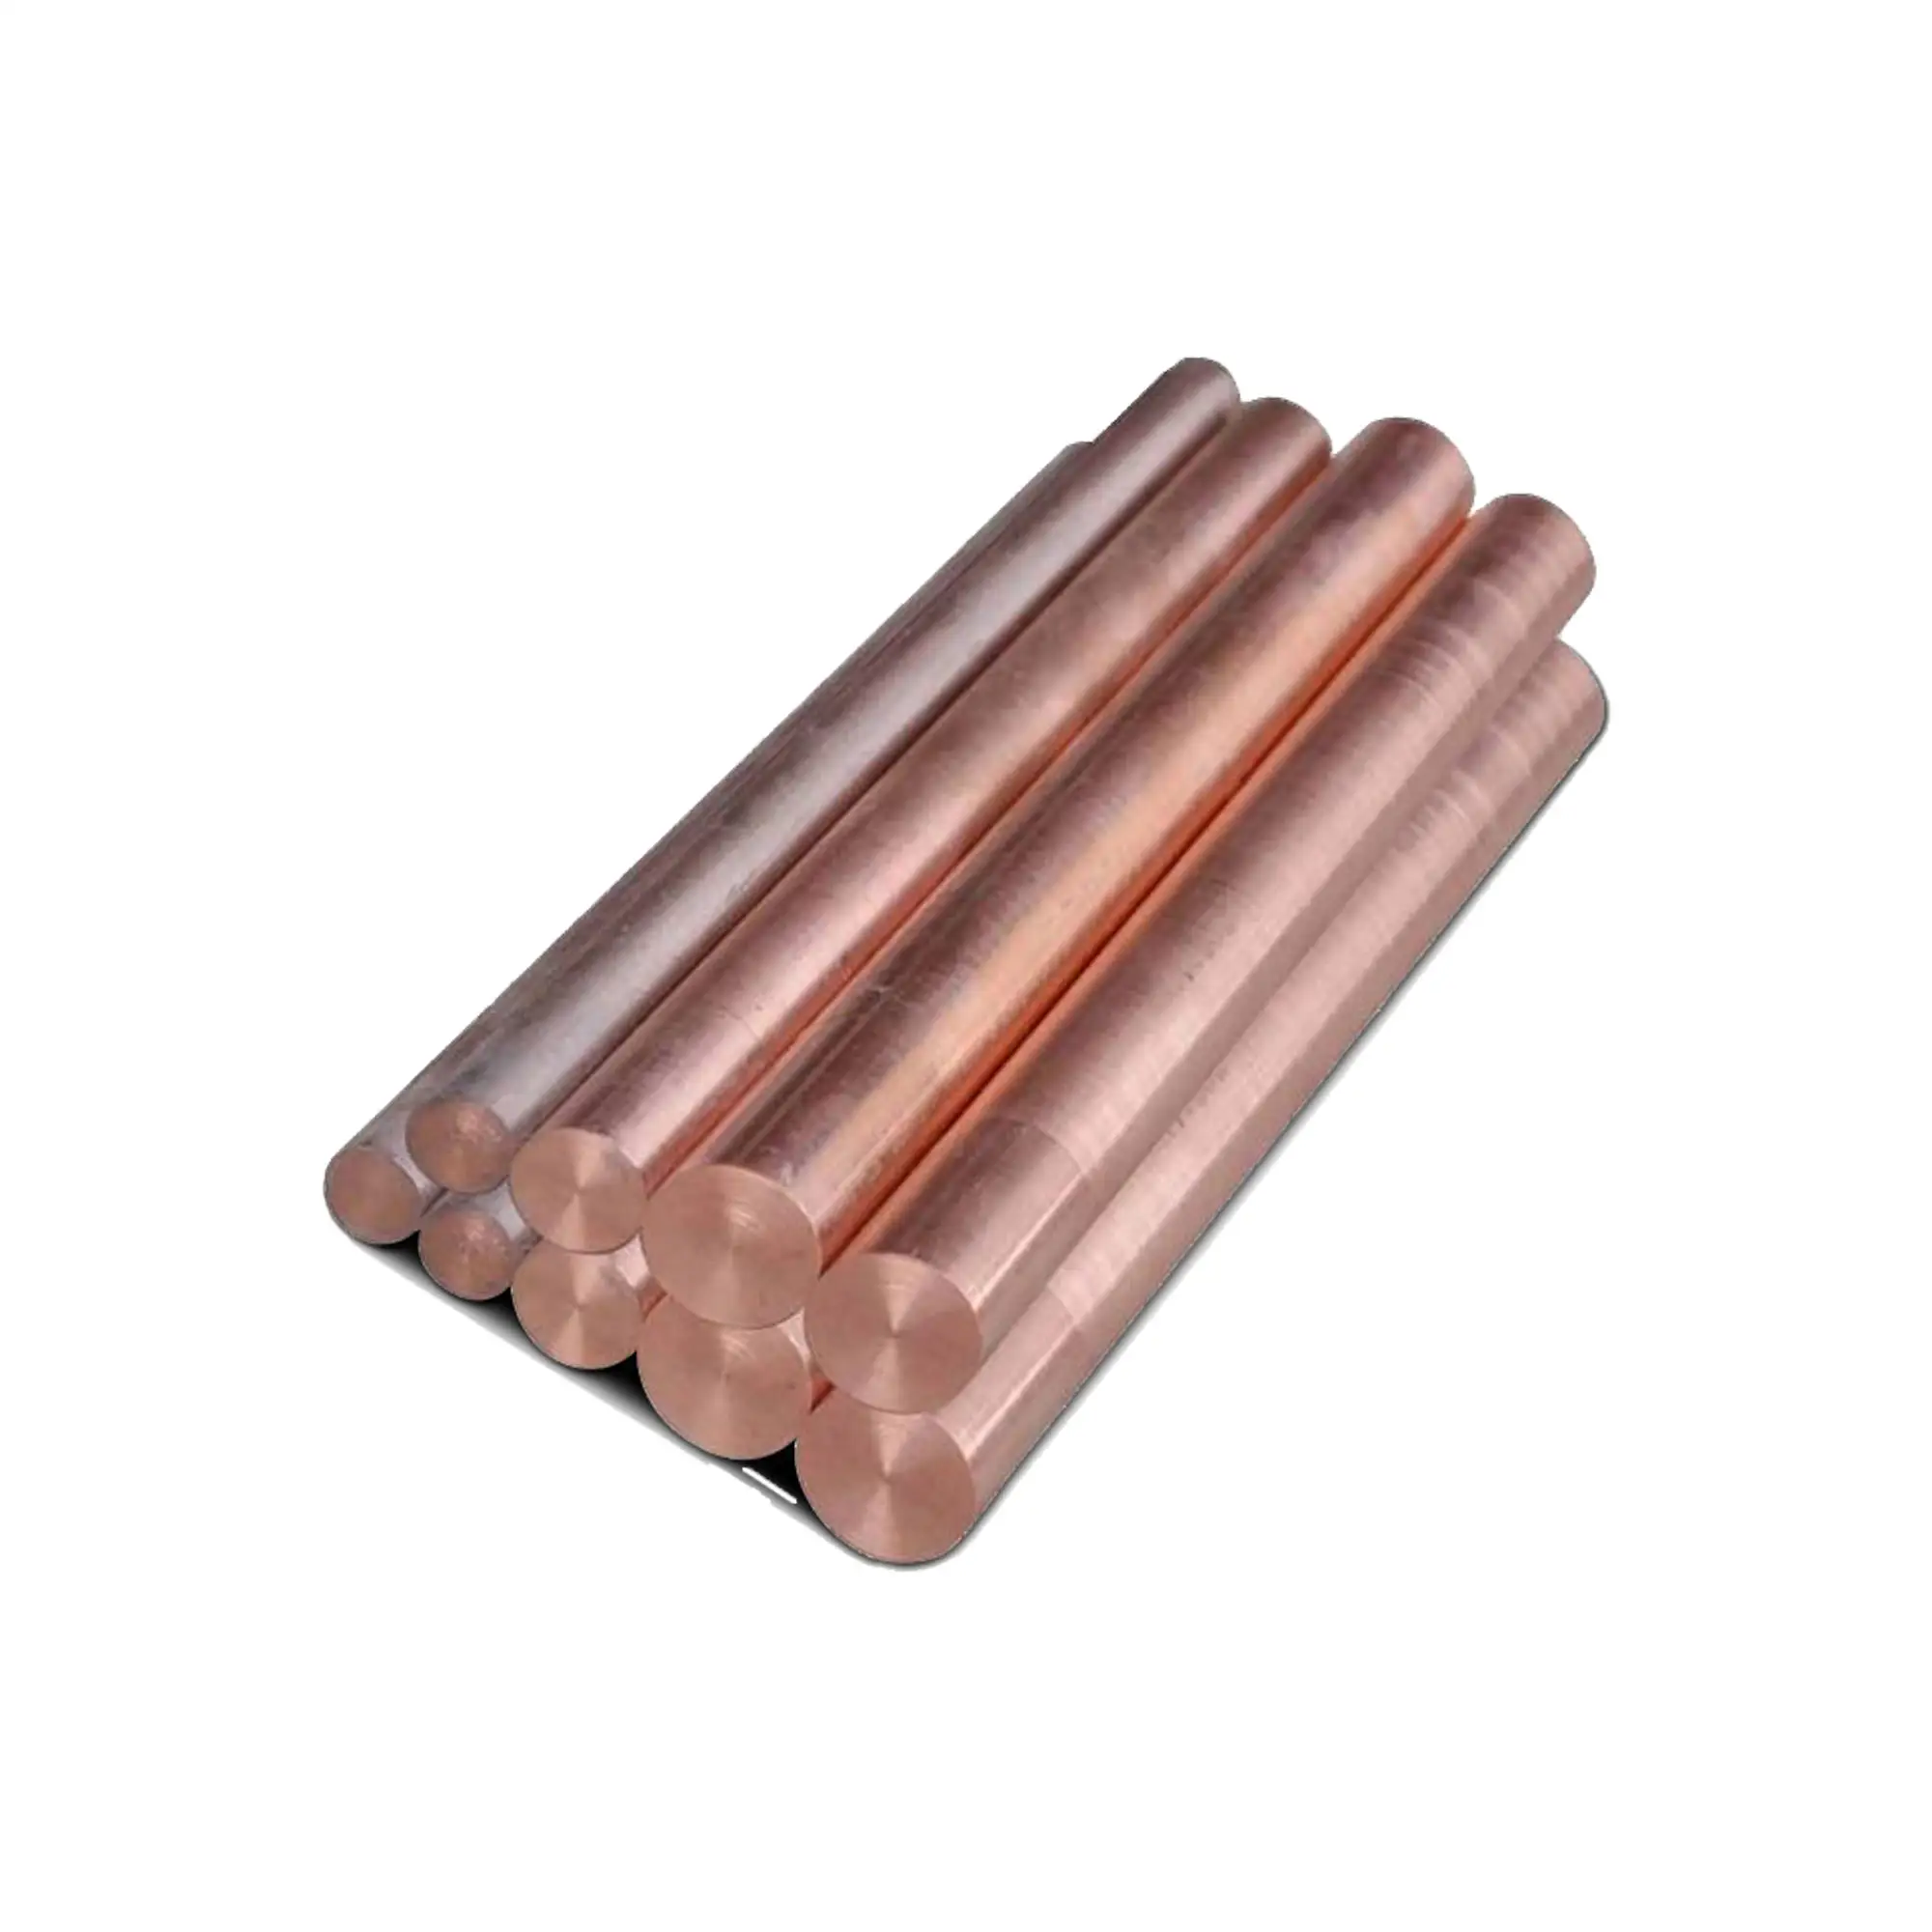 Vente chaude dans les usines cuivre tellure 18mm barres de cuivre tige de brasage cuivre